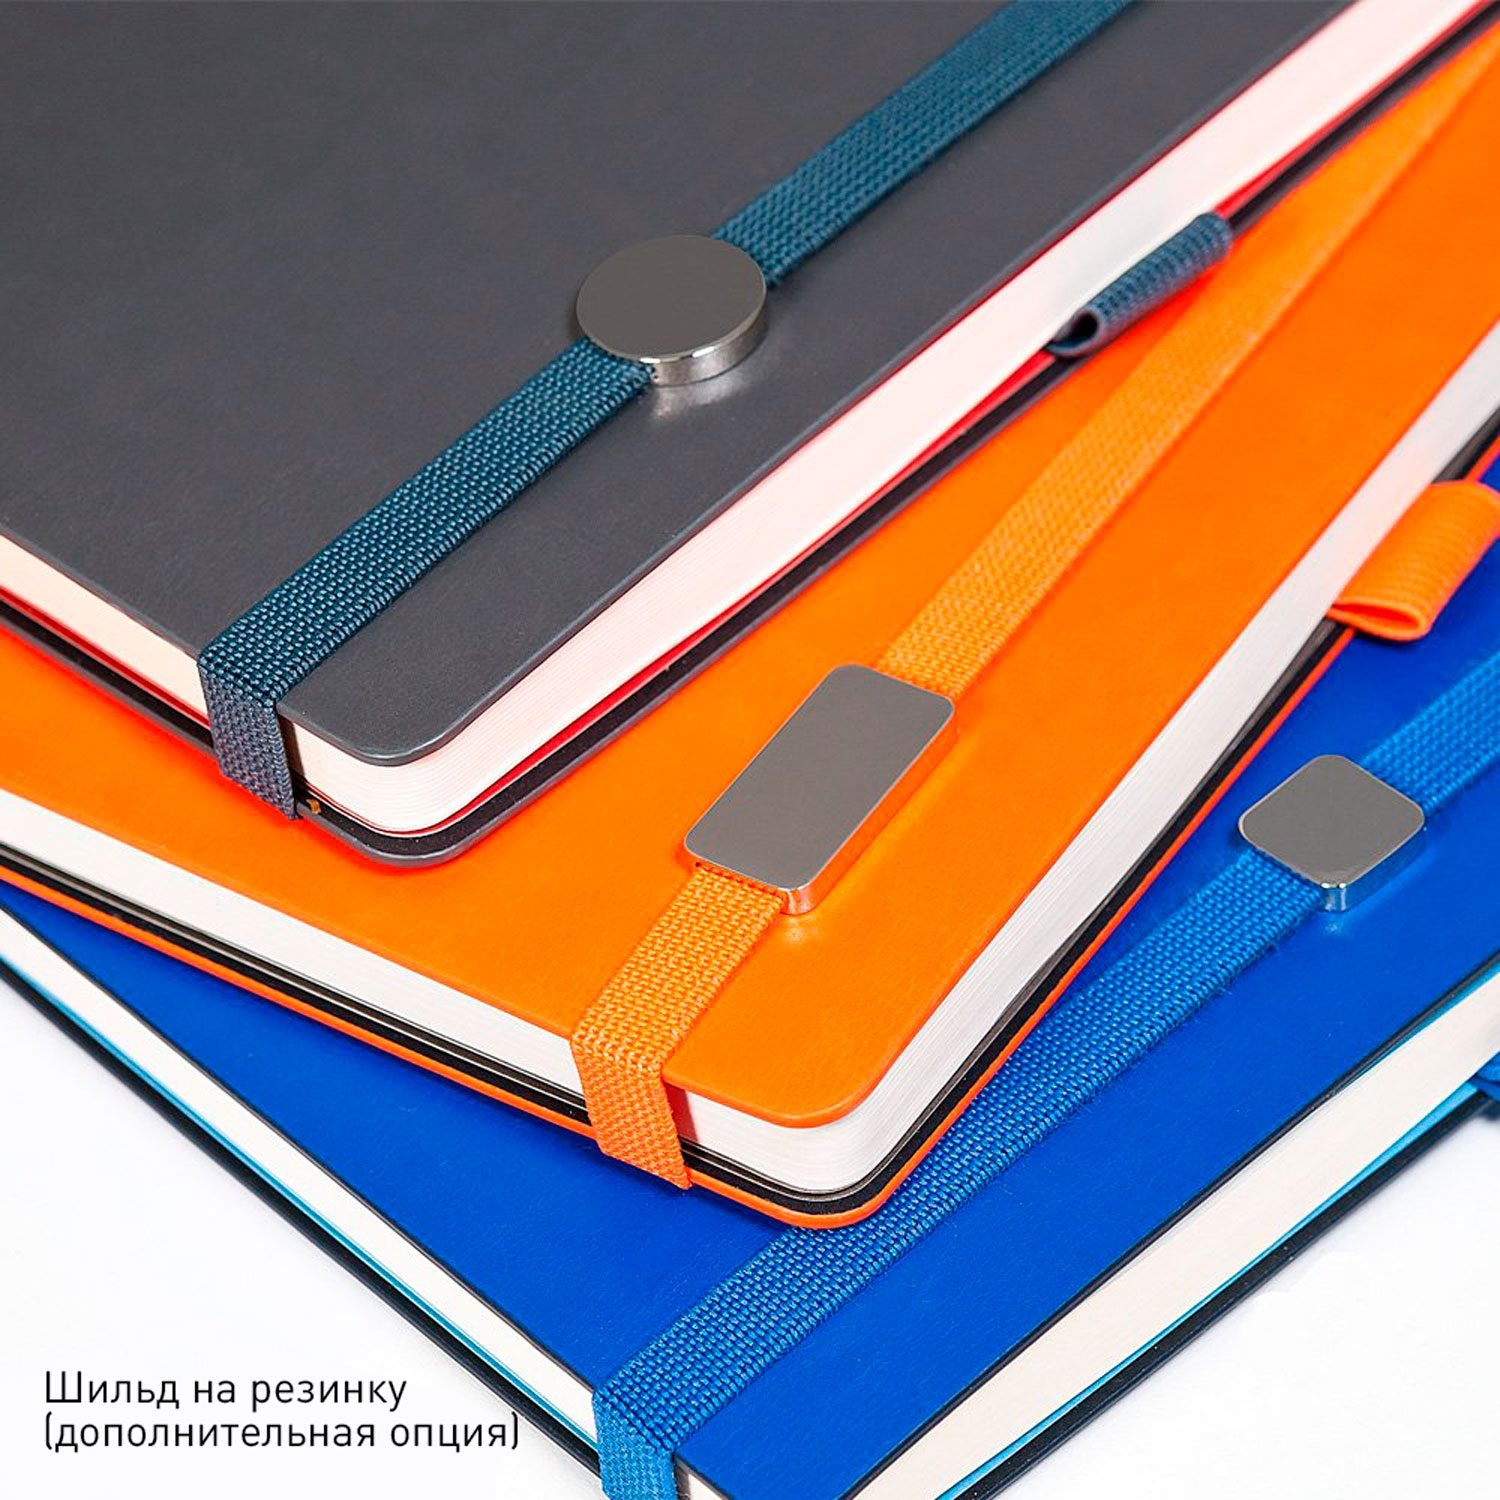 Ежедневник Chameleon BtoBook недатированный, черный/оранжевый (без упаковки, без стикера), черный